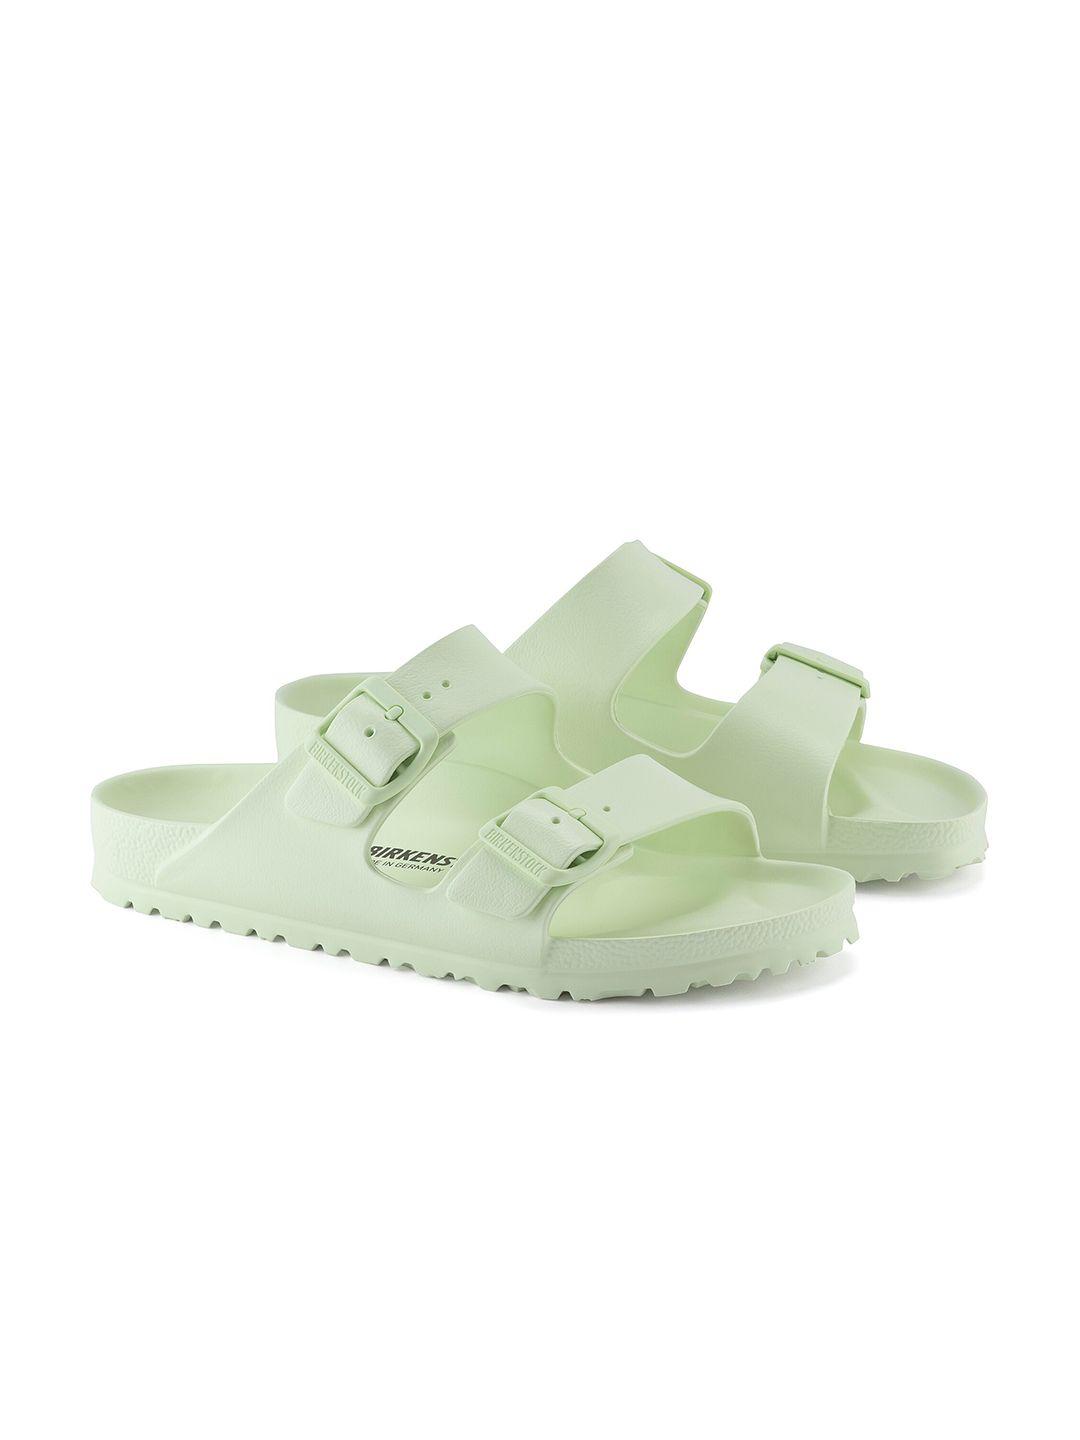 birkenstock arizona regular width two-strap comfort sandals